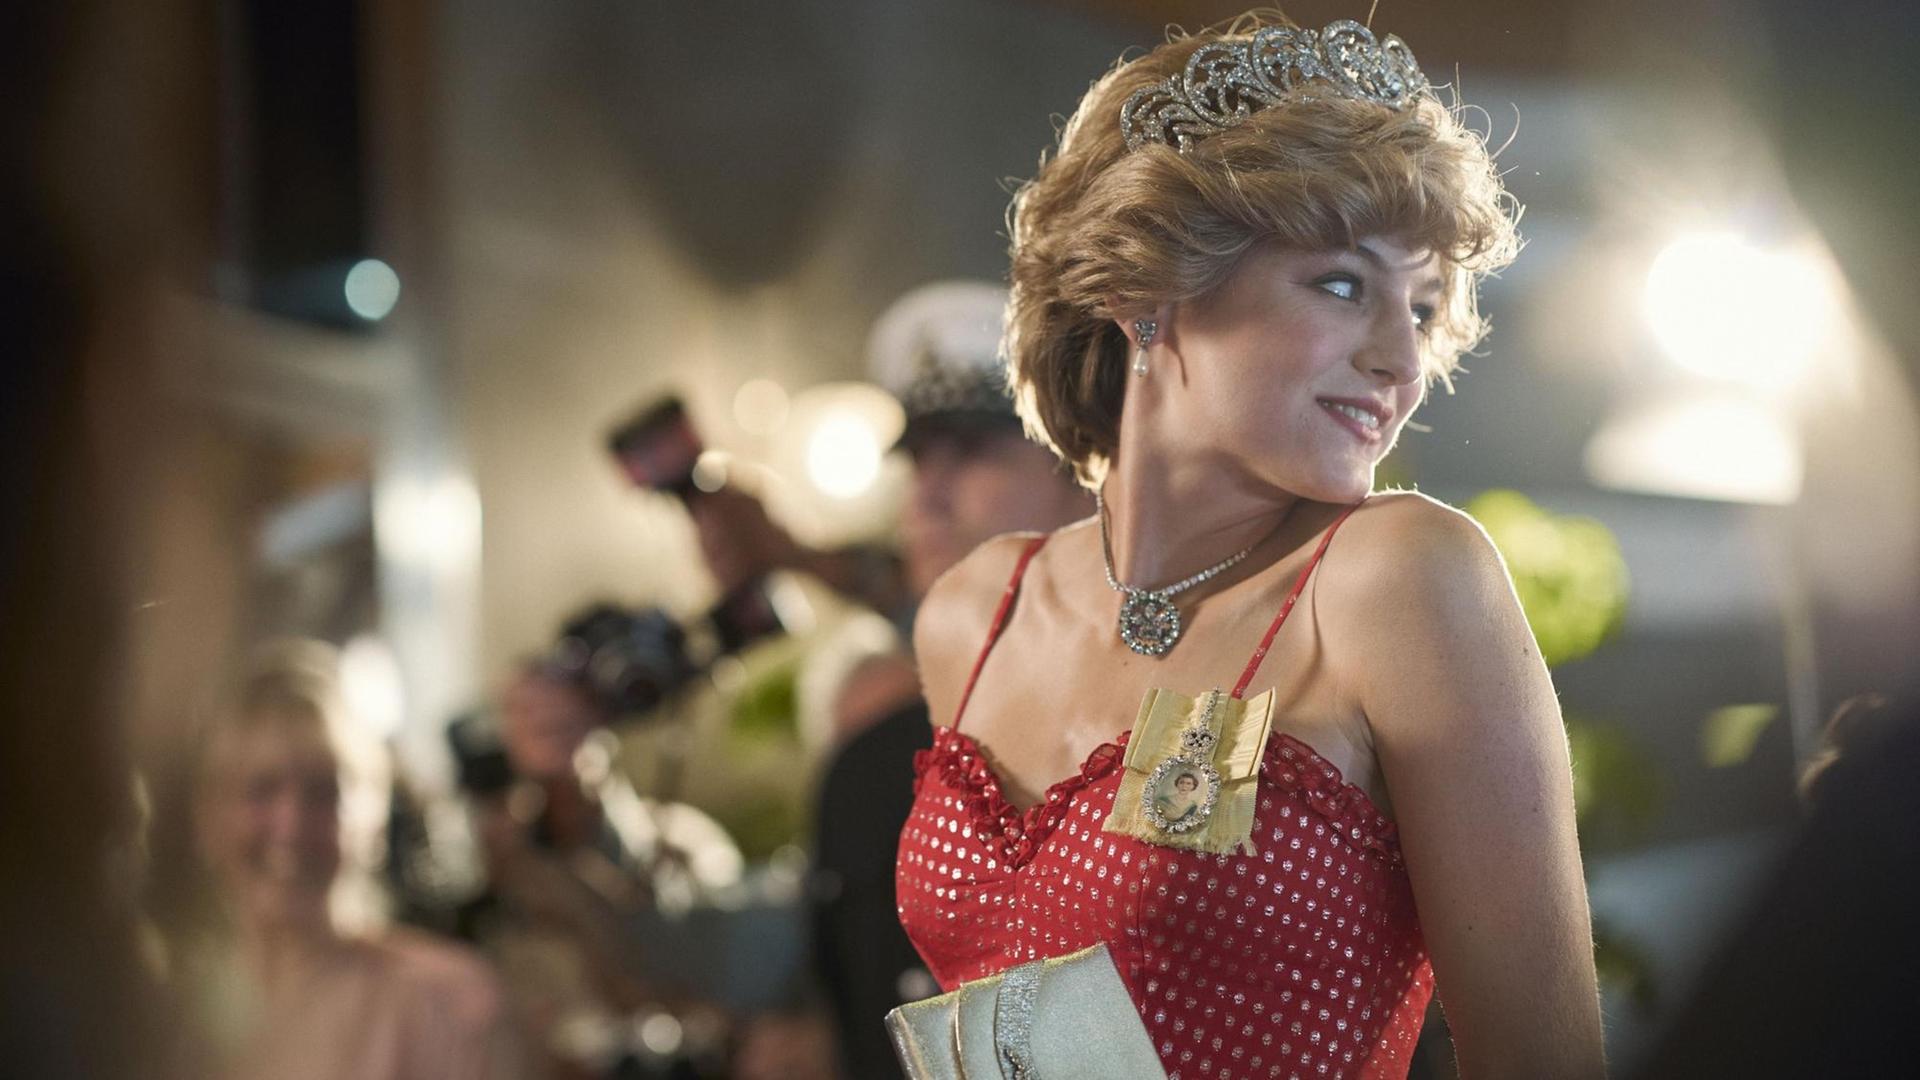 Szene aus "The Crown" Staffel 4, Diana Princess of Wales gespielt von Emma Corrin im Blitzlichtgewitter.